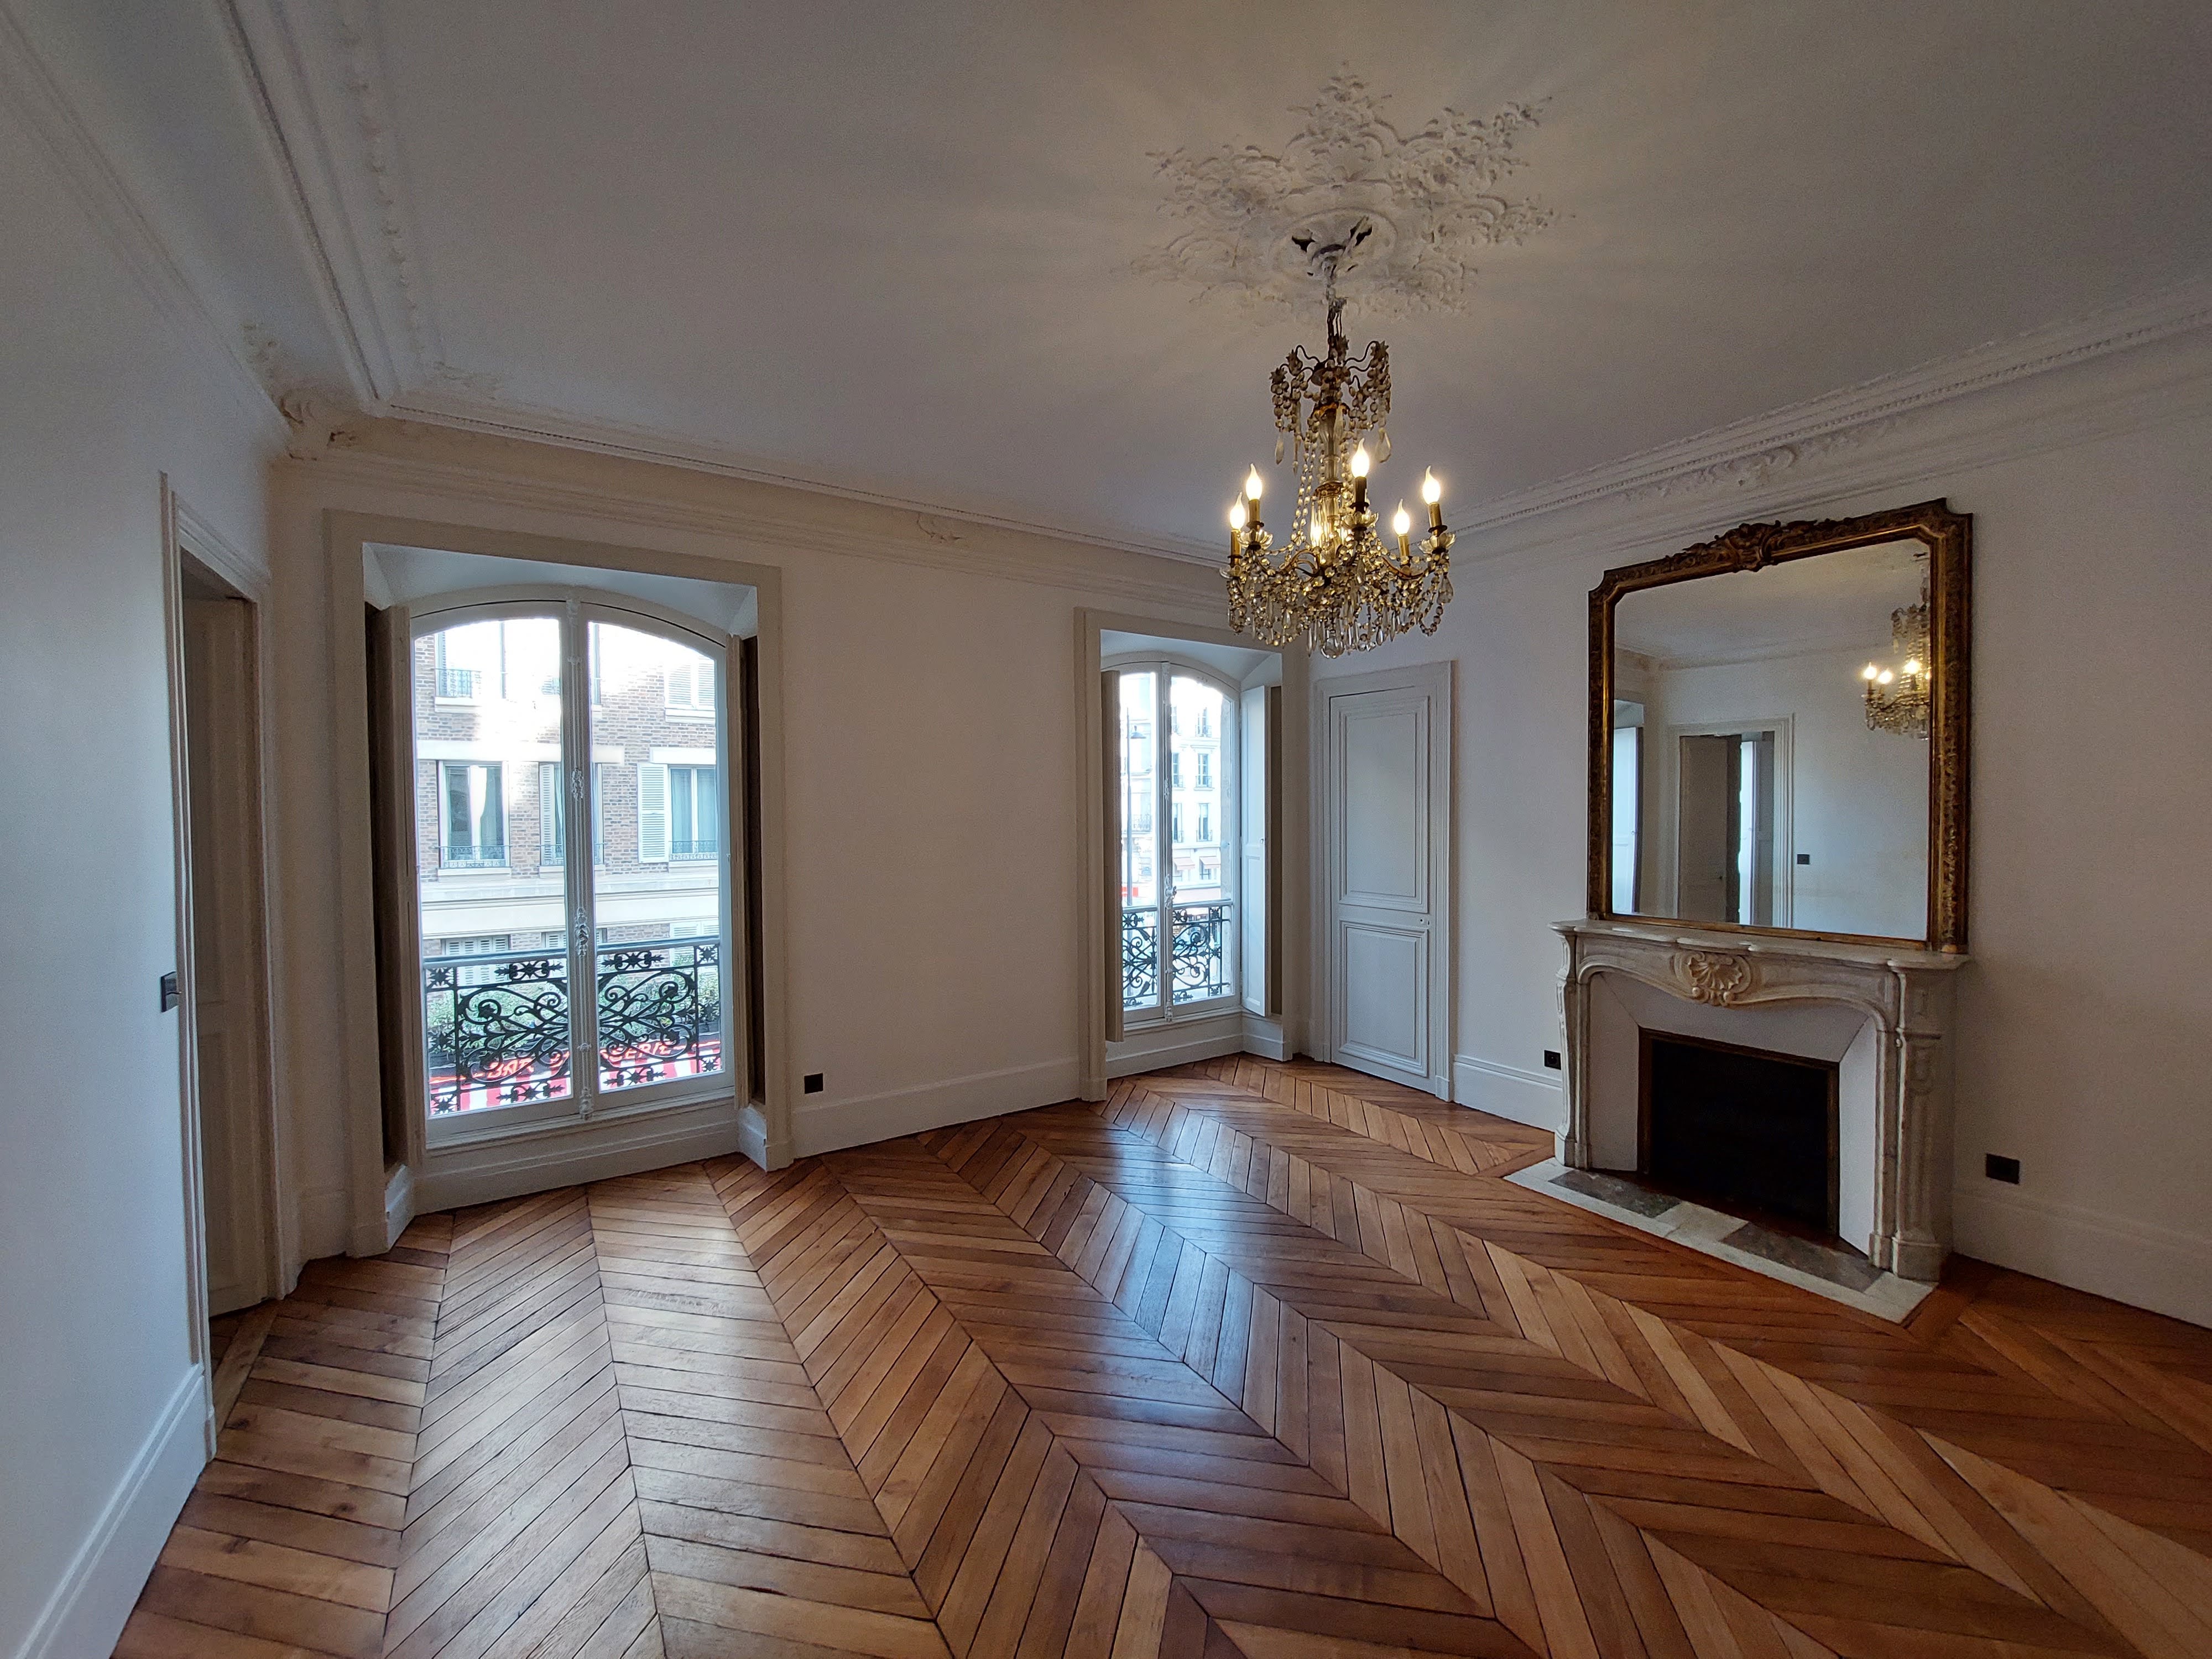 Image Sale apartment 10 rooms 221 m² Paris 6E (75006) 3.990.000 € 3